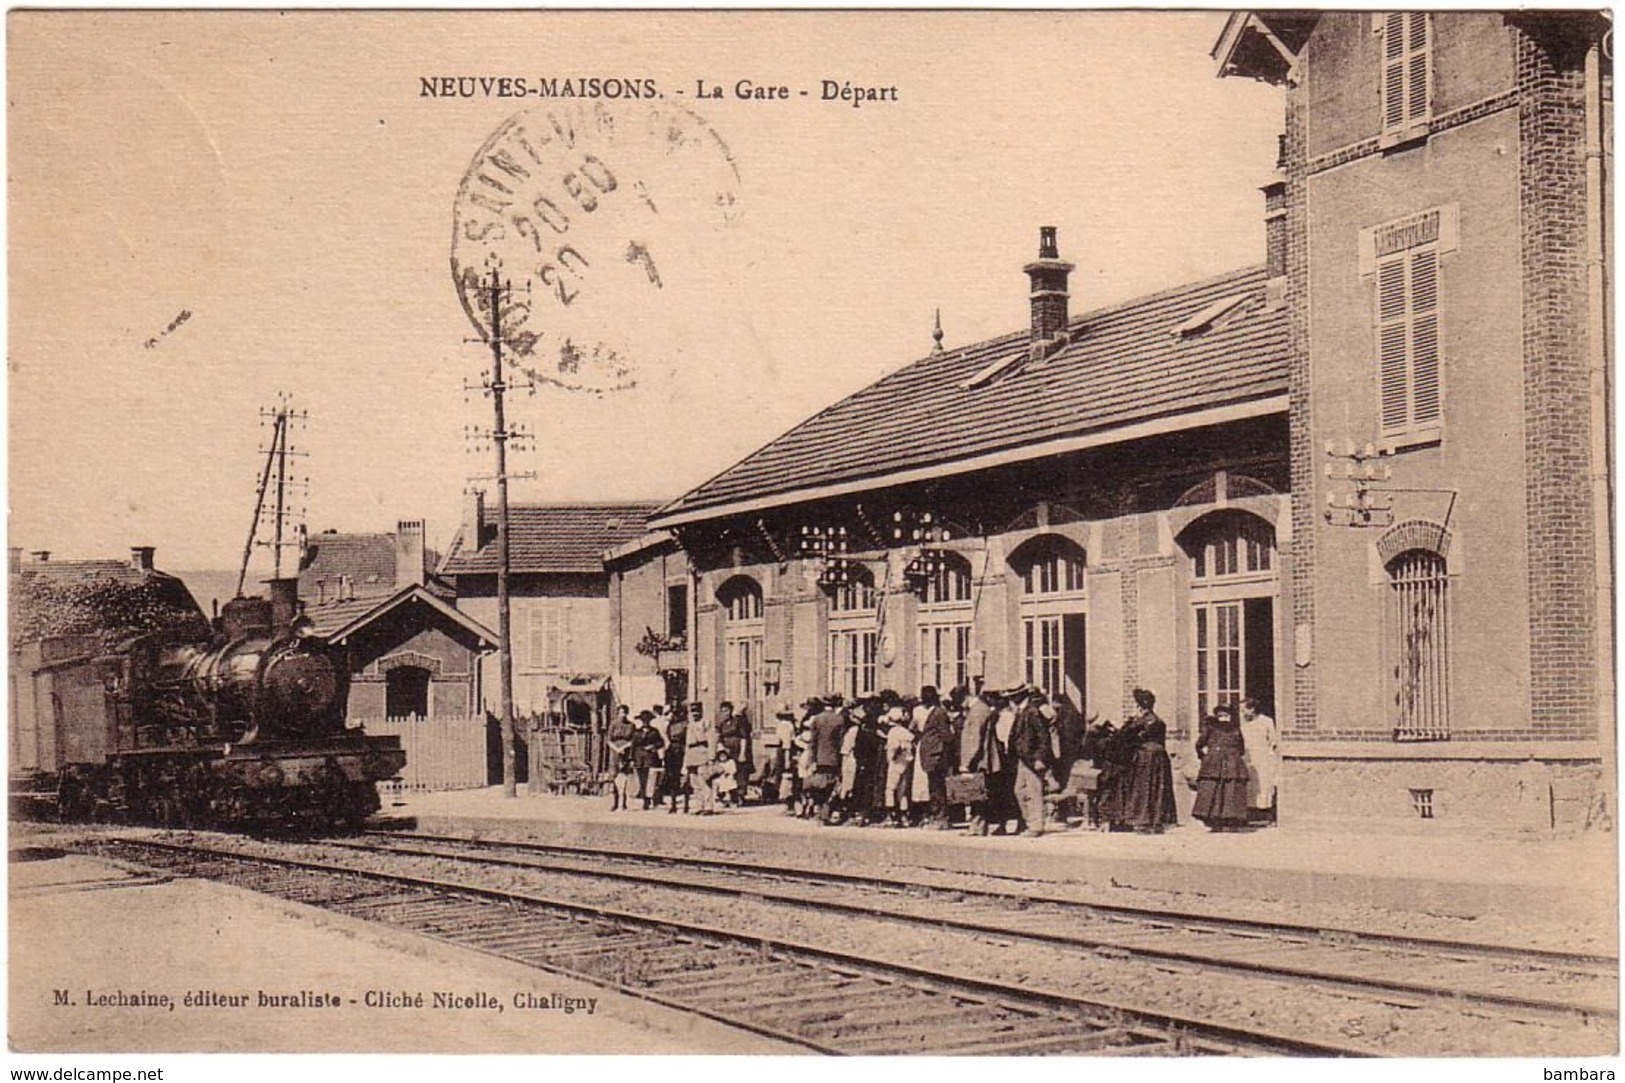 NEUVES-MAISONS - La Gare - Neuves Maisons